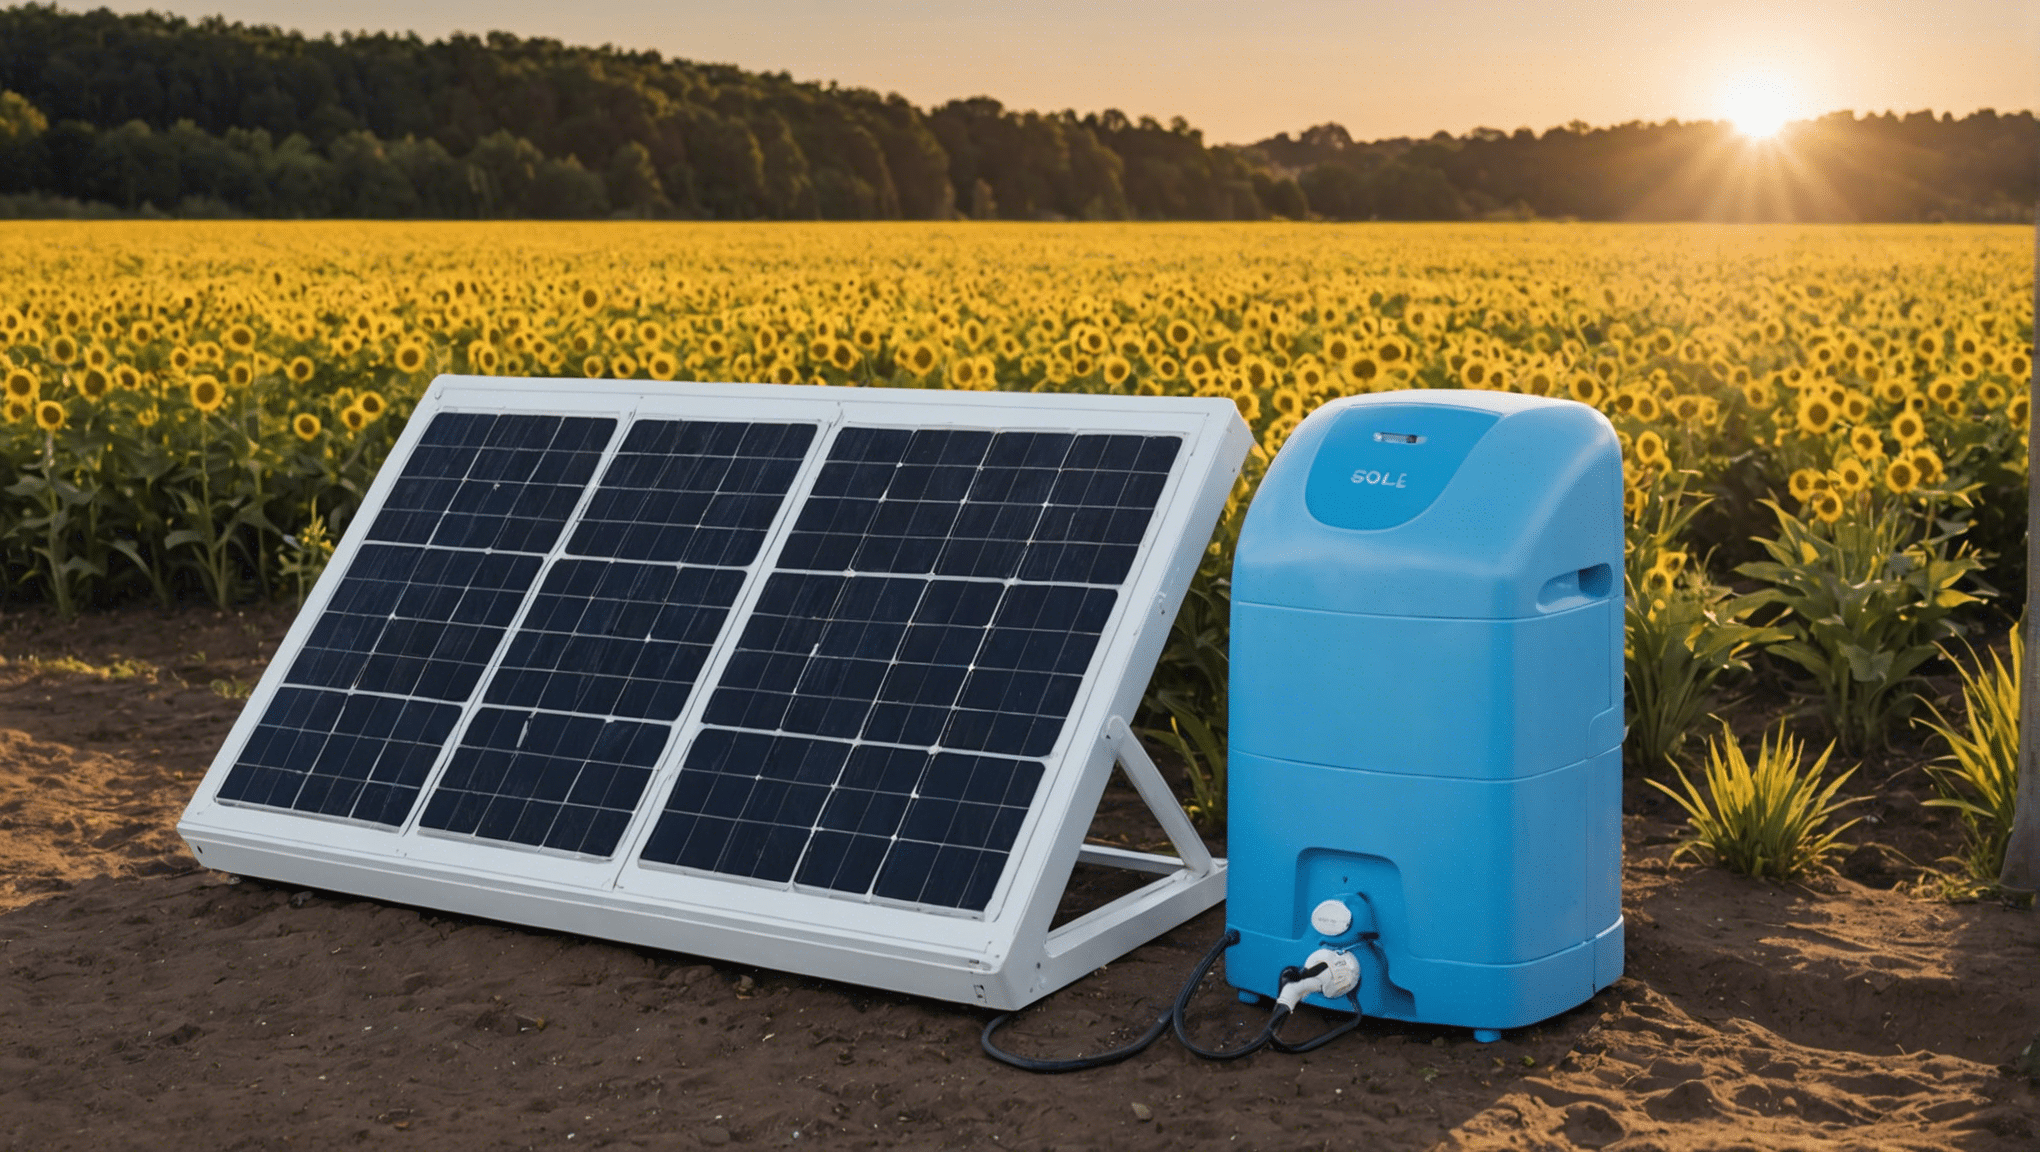 découvrez comment choisir le meilleur prix pour un chauffe-eau solaire grâce à nos conseils et astuces. optez pour une solution écologique et économique pour votre production d'eau chaude.